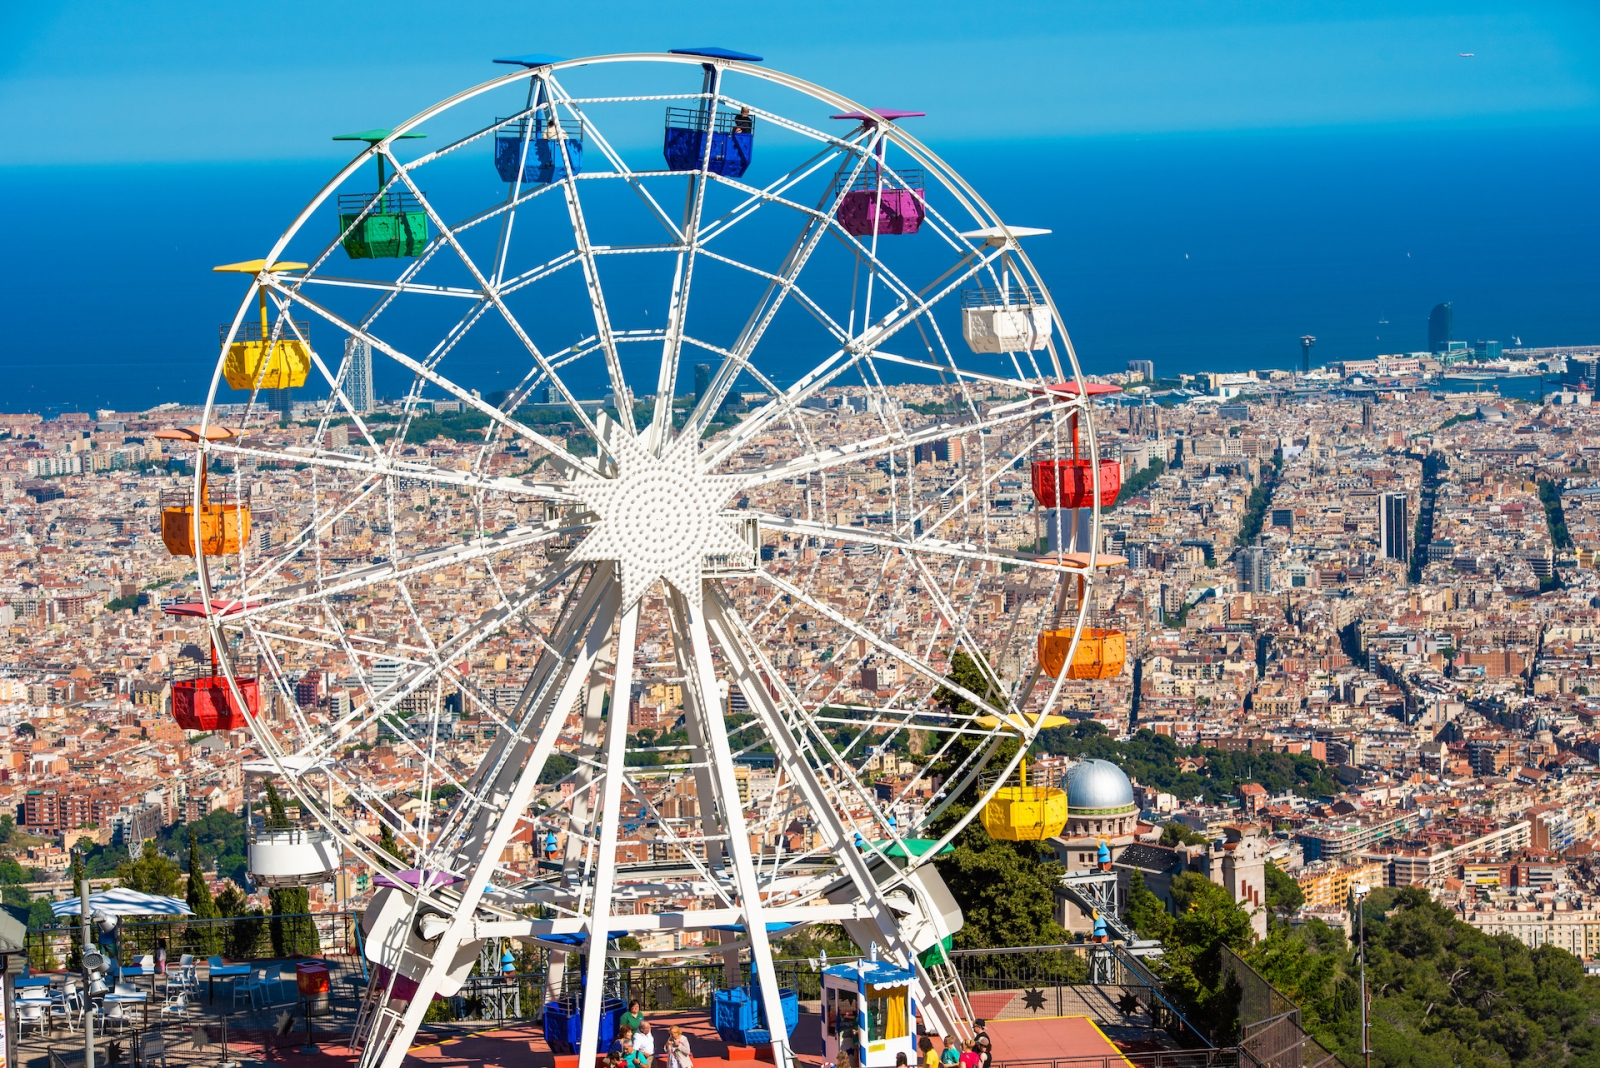 Колесо обозрения в парке развлечений Тибидабо, Барселона, Каталония, Испания.  С избирательным фокусом.